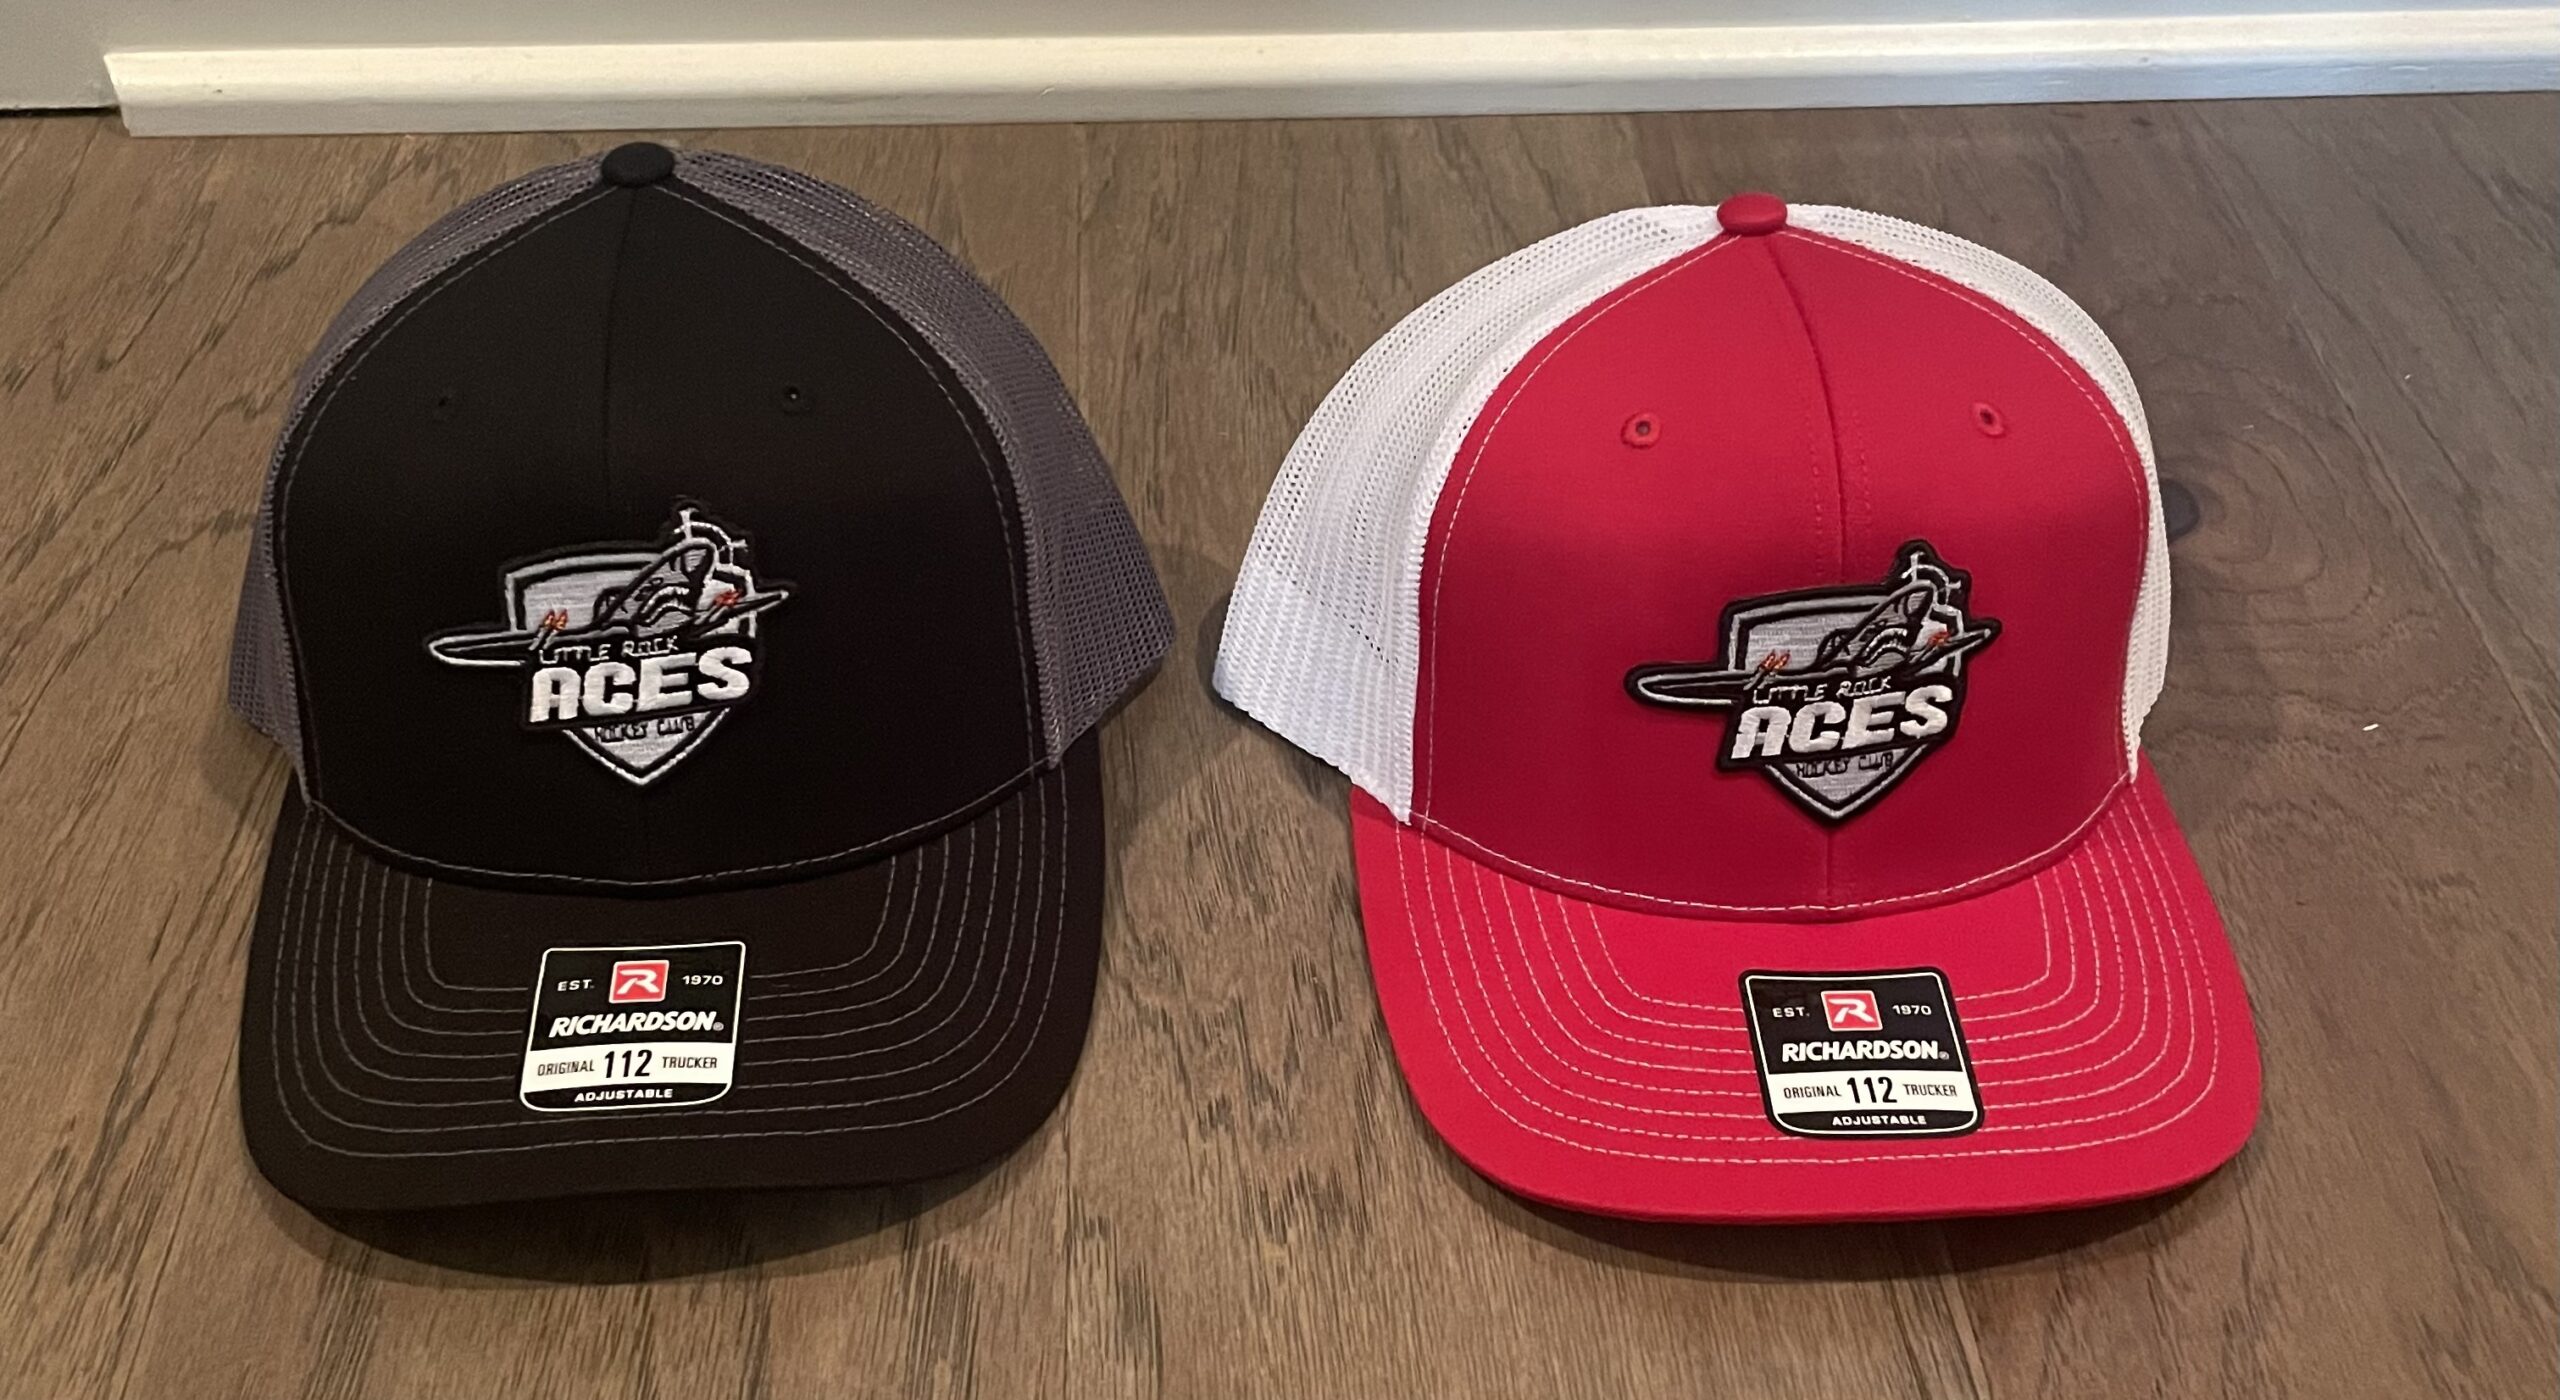 Aces Merchandise Pics - Arkansas Hockey Association